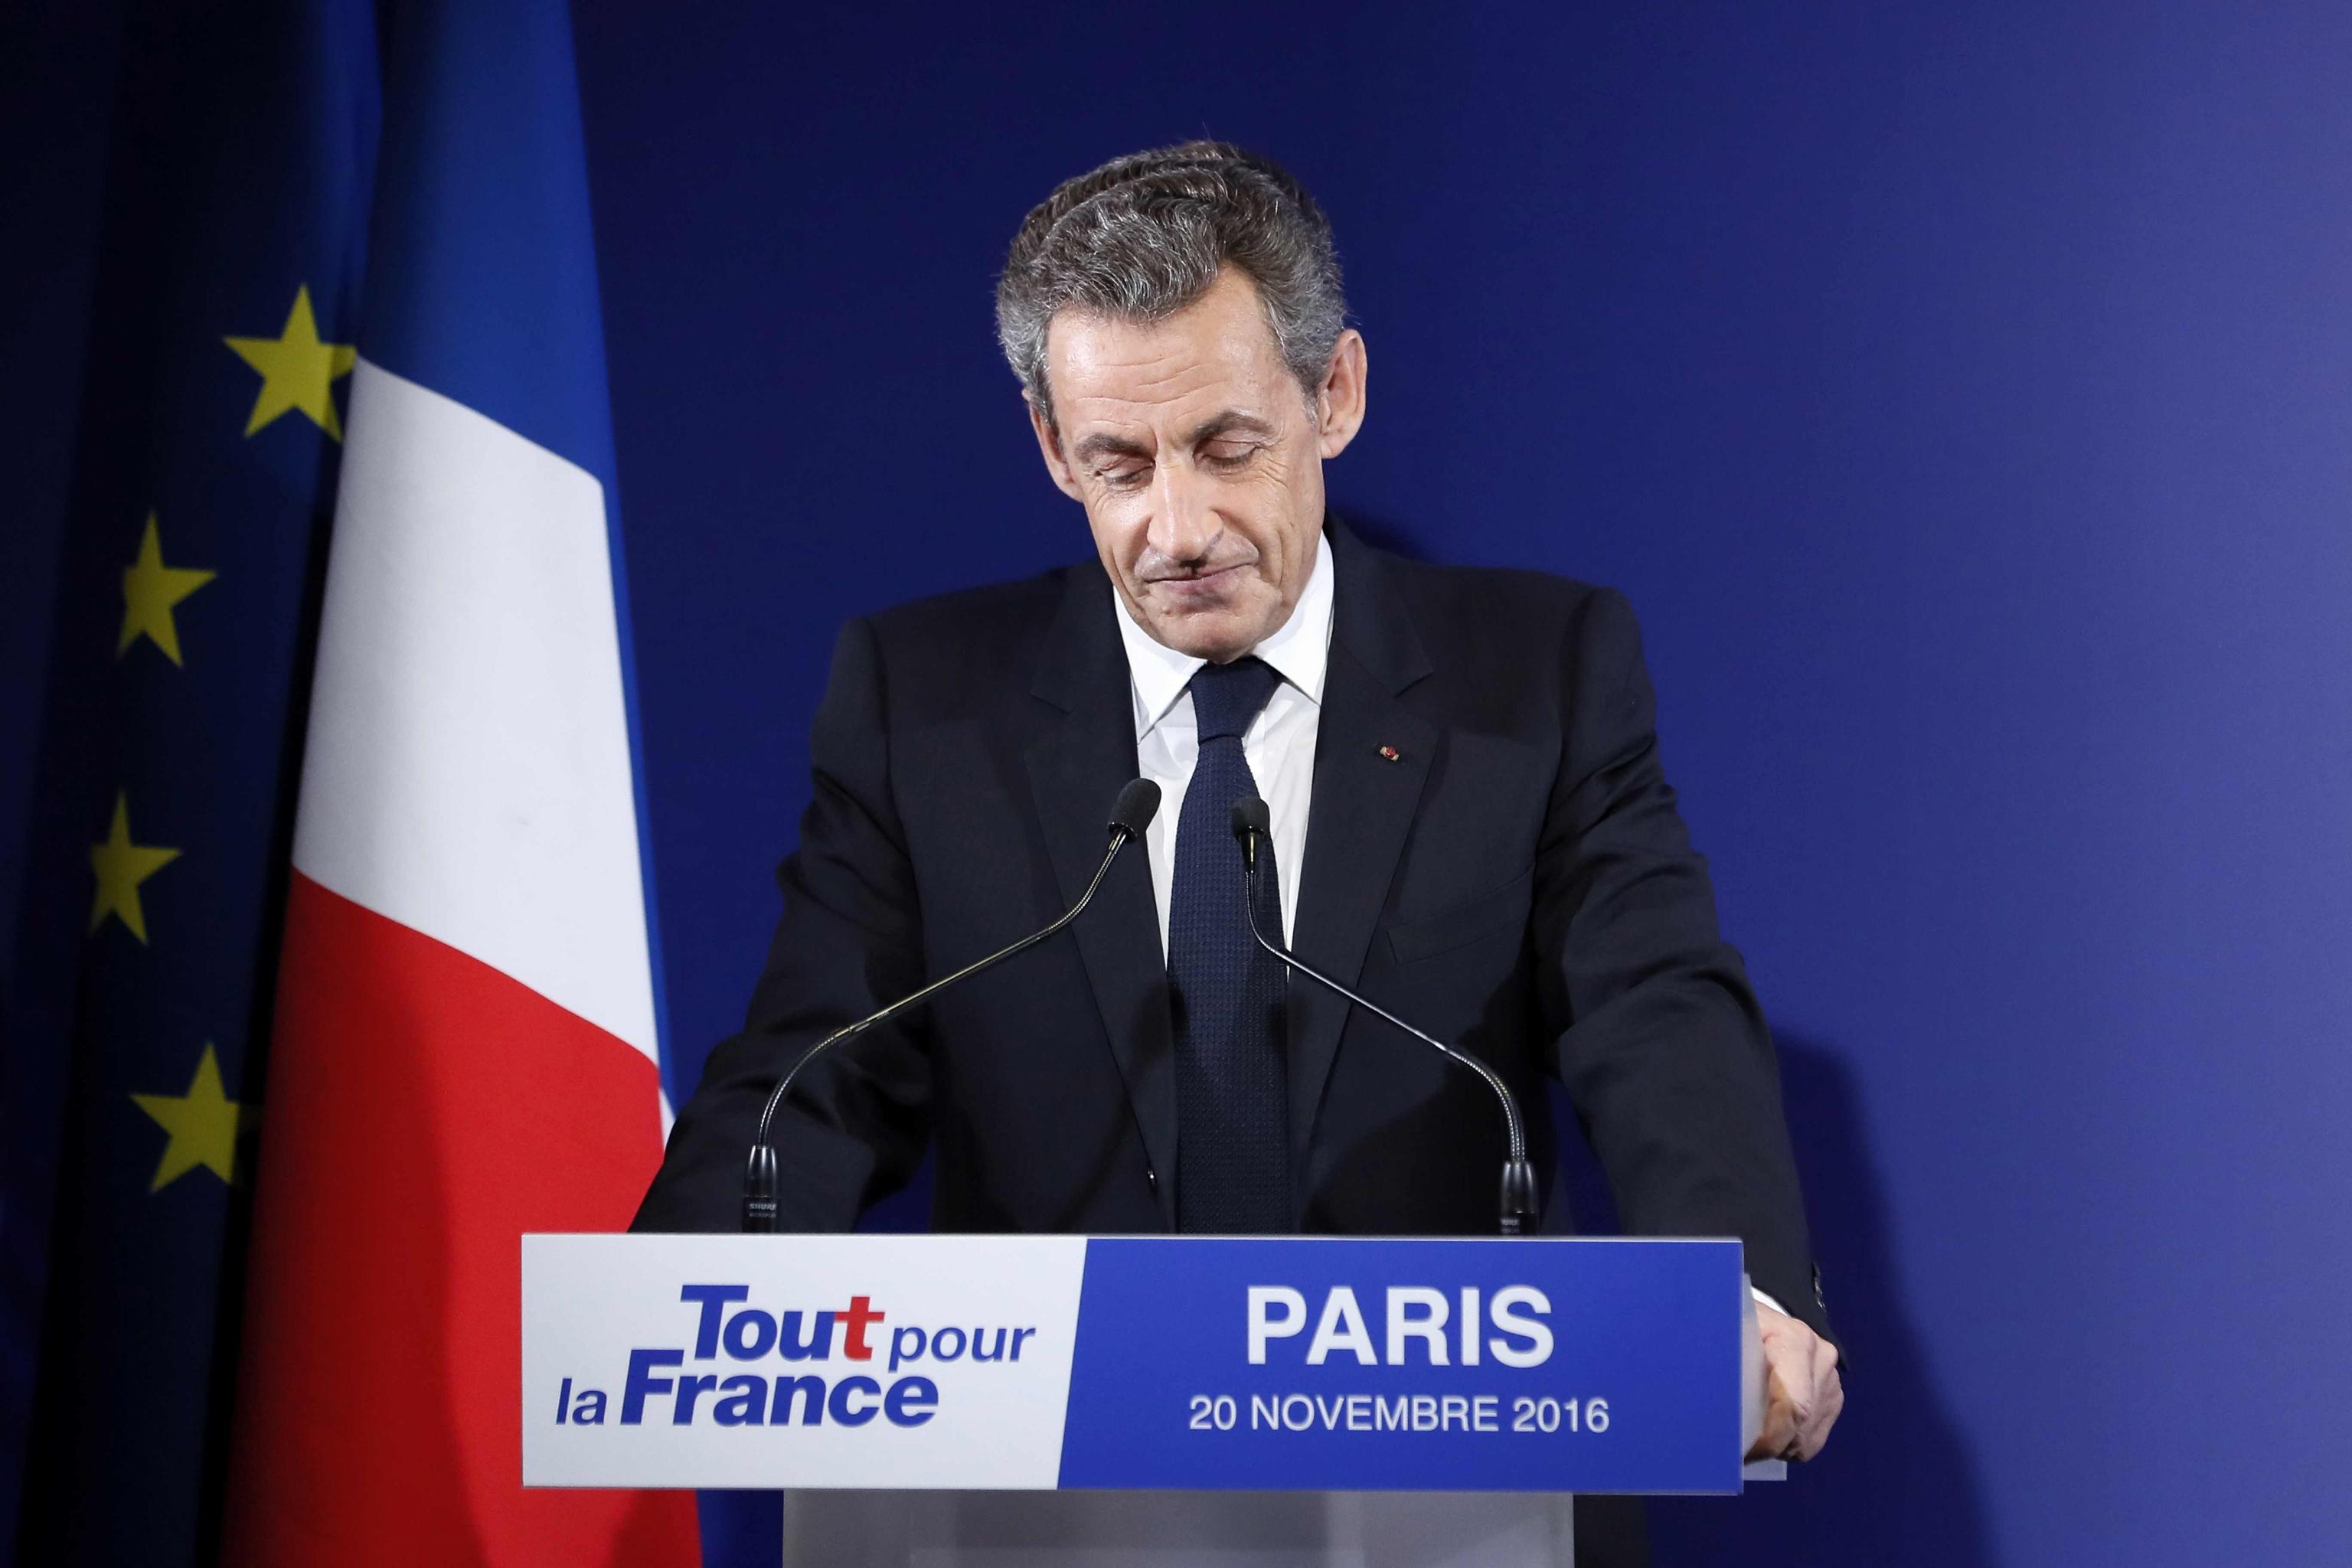 L'ex presidente Sarkozy, sconfitto alle primarie nel novembre 2016